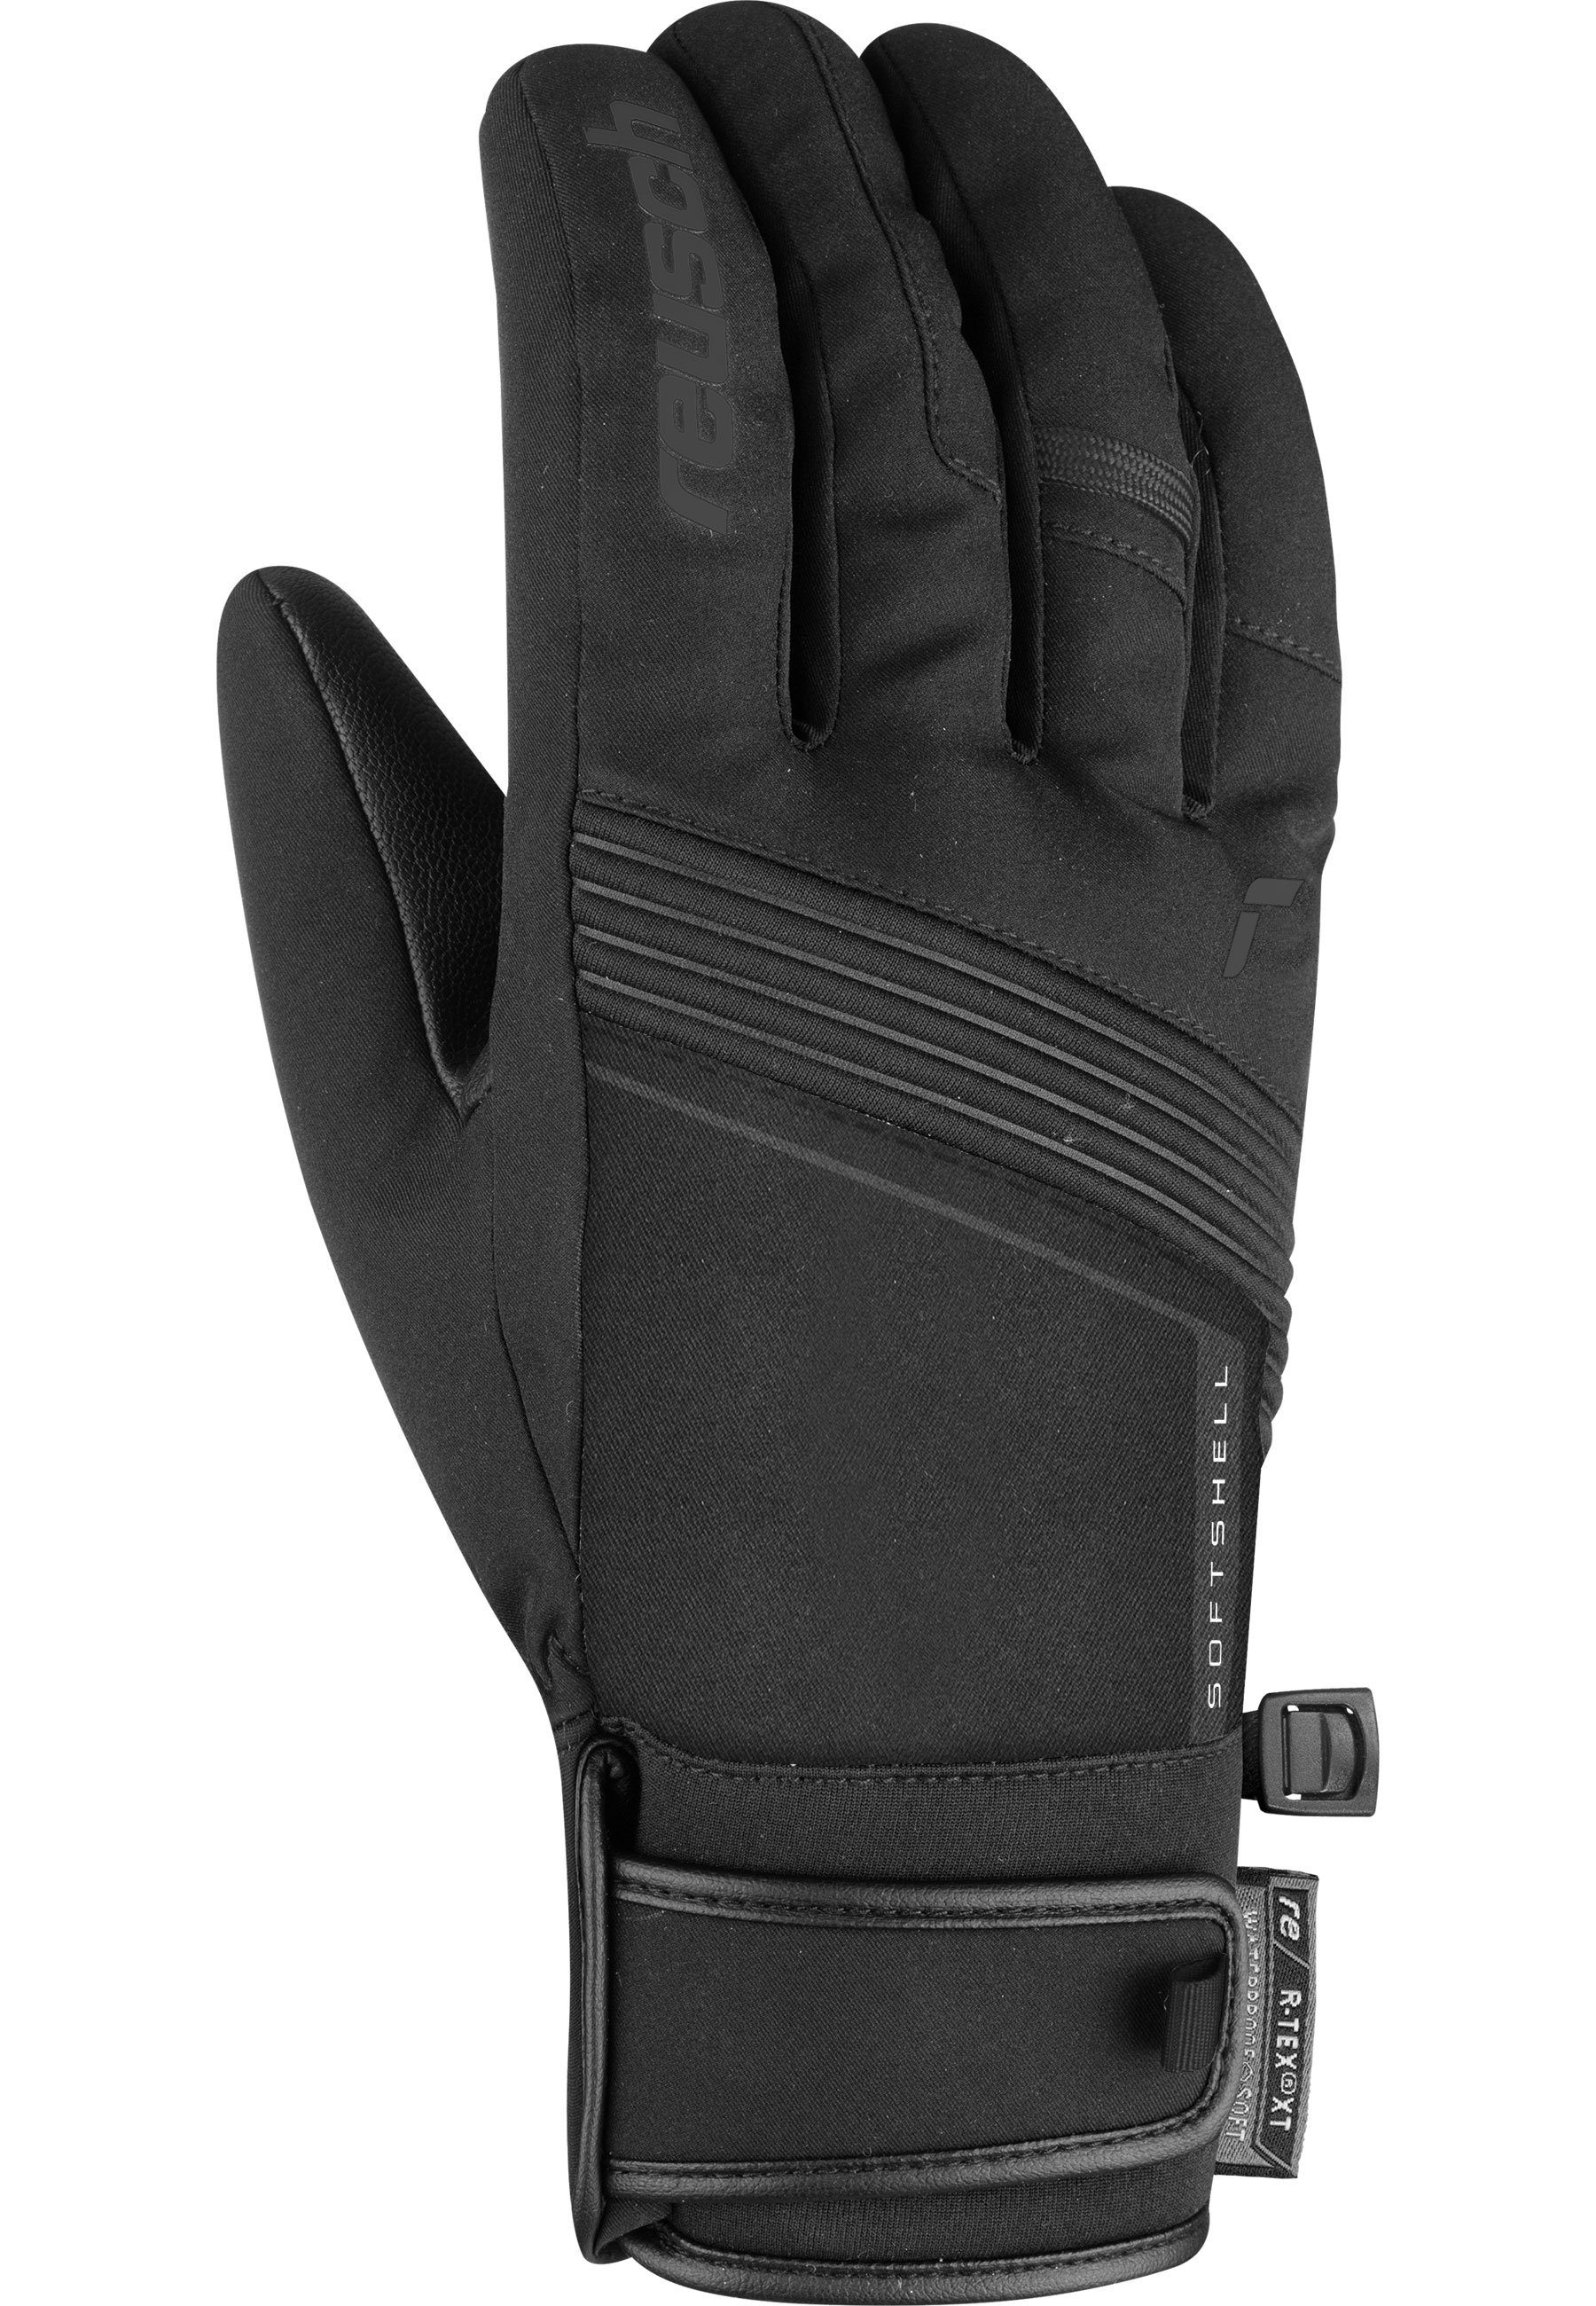 Reusch Skihandschuhe schwarz XT aus hochwertigem Luca R-TEX® Material